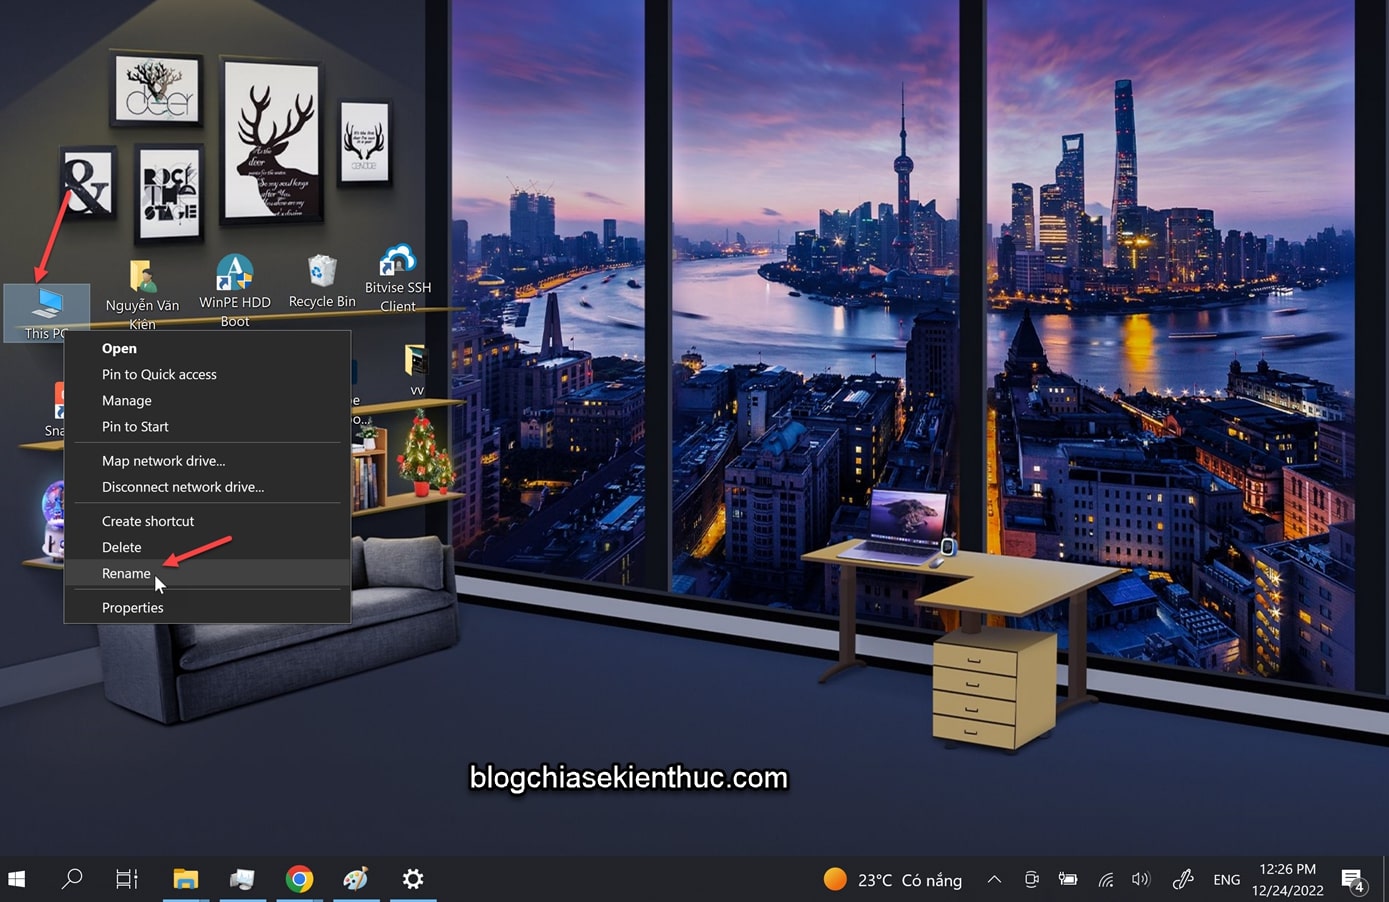 cach-loai-bo-ten-cua-icon-ngoai-desktop-windows (1)